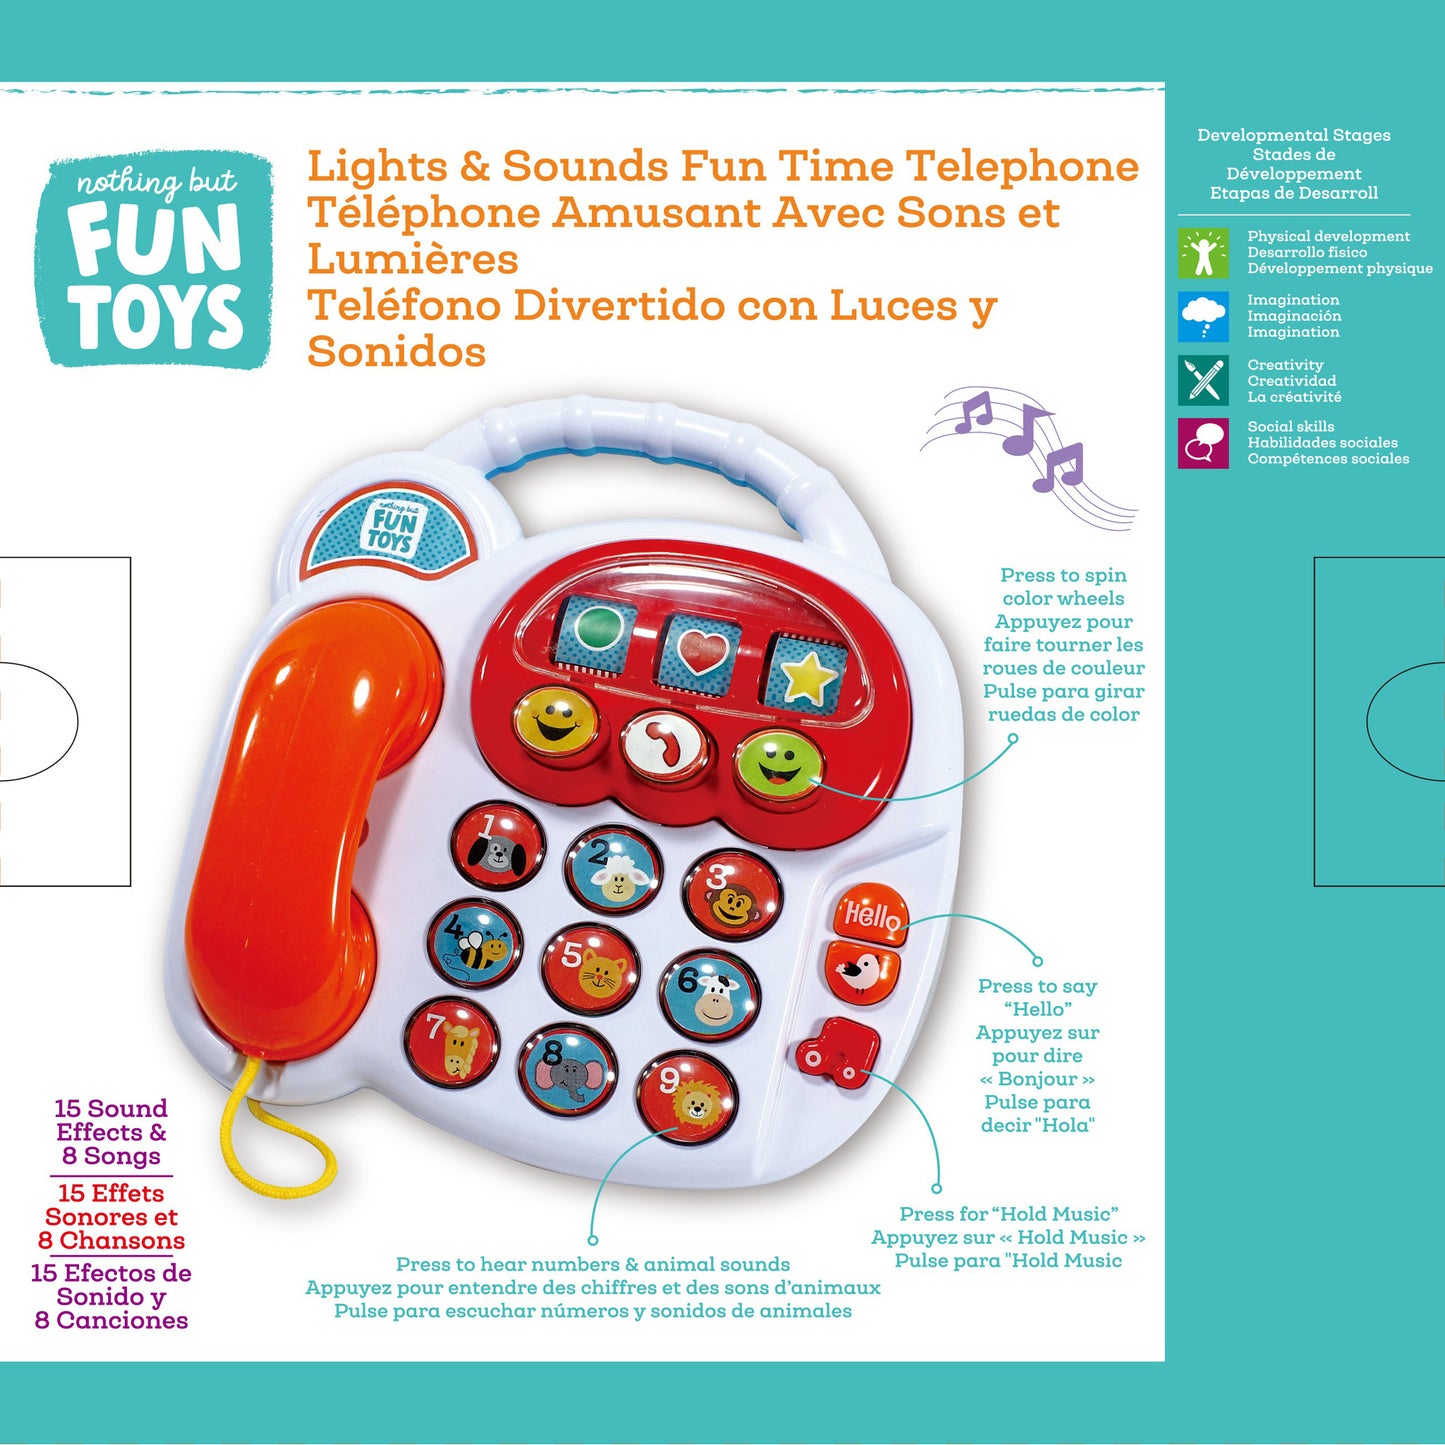 Fun Time Telephone